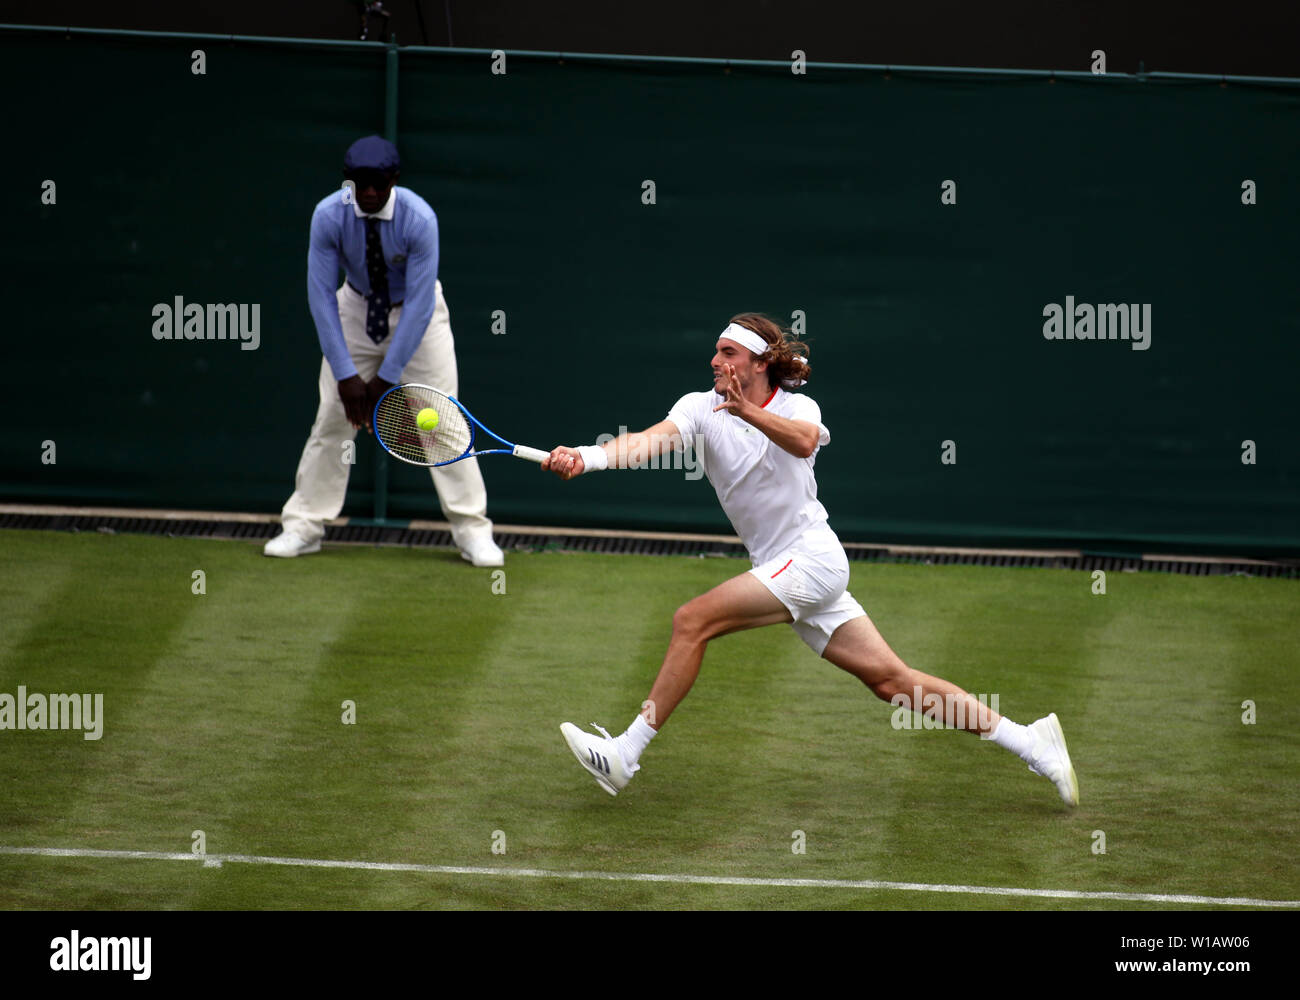 Wimbledon, 1er juillet 2019 Tsitsipas - Stefanos de Grèce en poste au cours de son premier match contre Thomas Fabbiano de l'Italie dans l'action journée d'ouverture de Wimbledon. Fabiano contrarié pour passer à Tsitsipas le deuxième tour. Banque D'Images